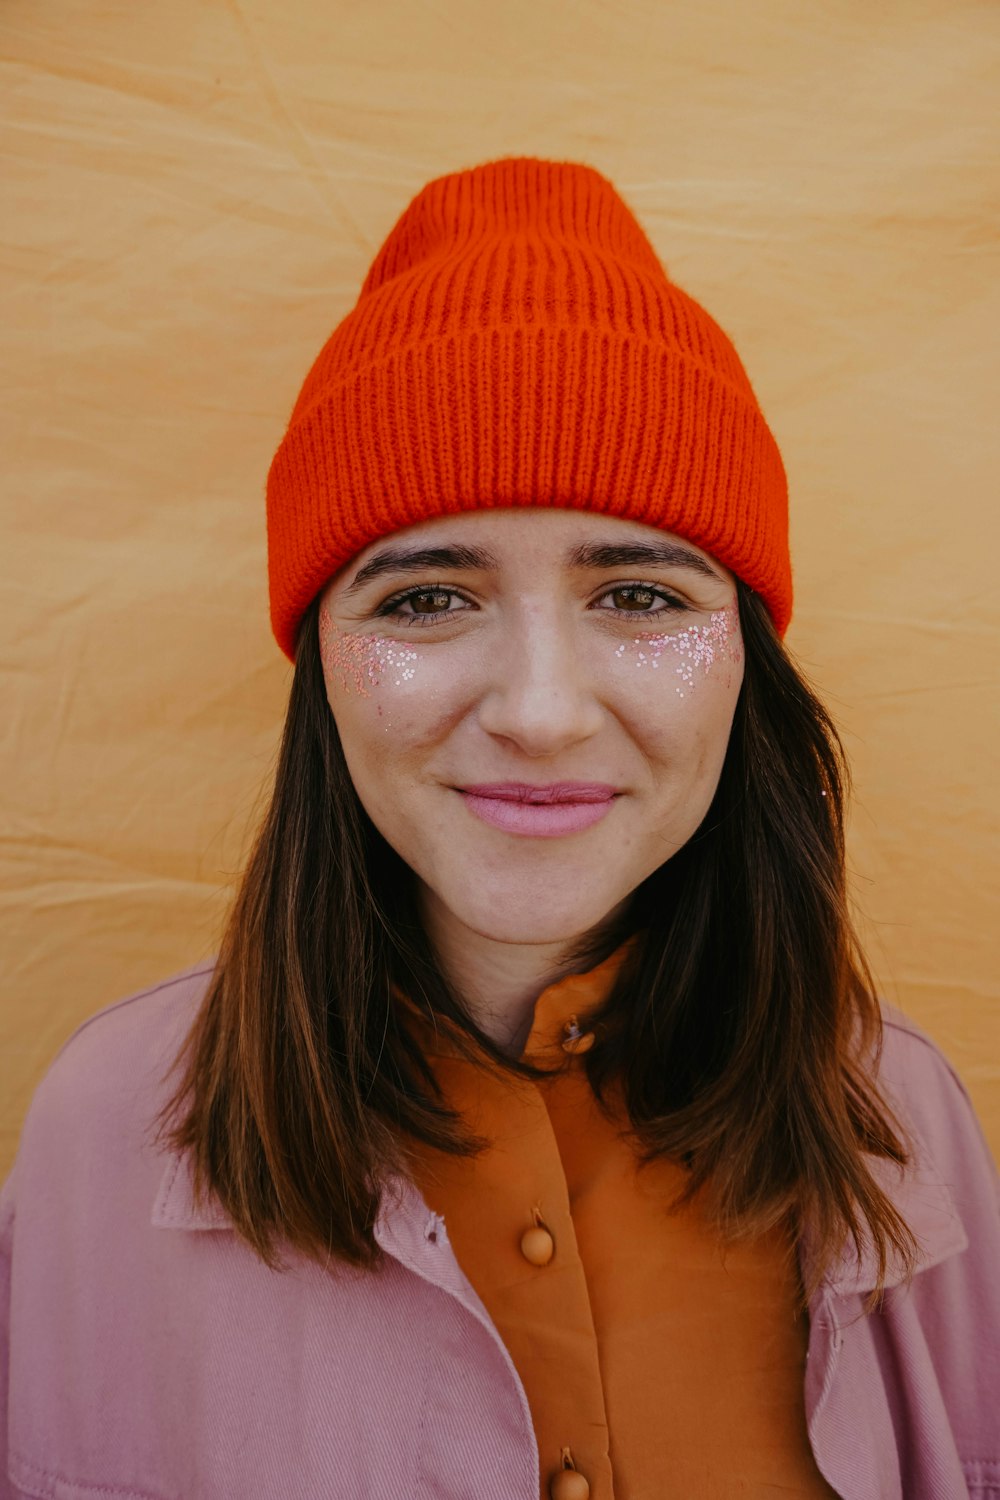 woman in orange knit cap smiling